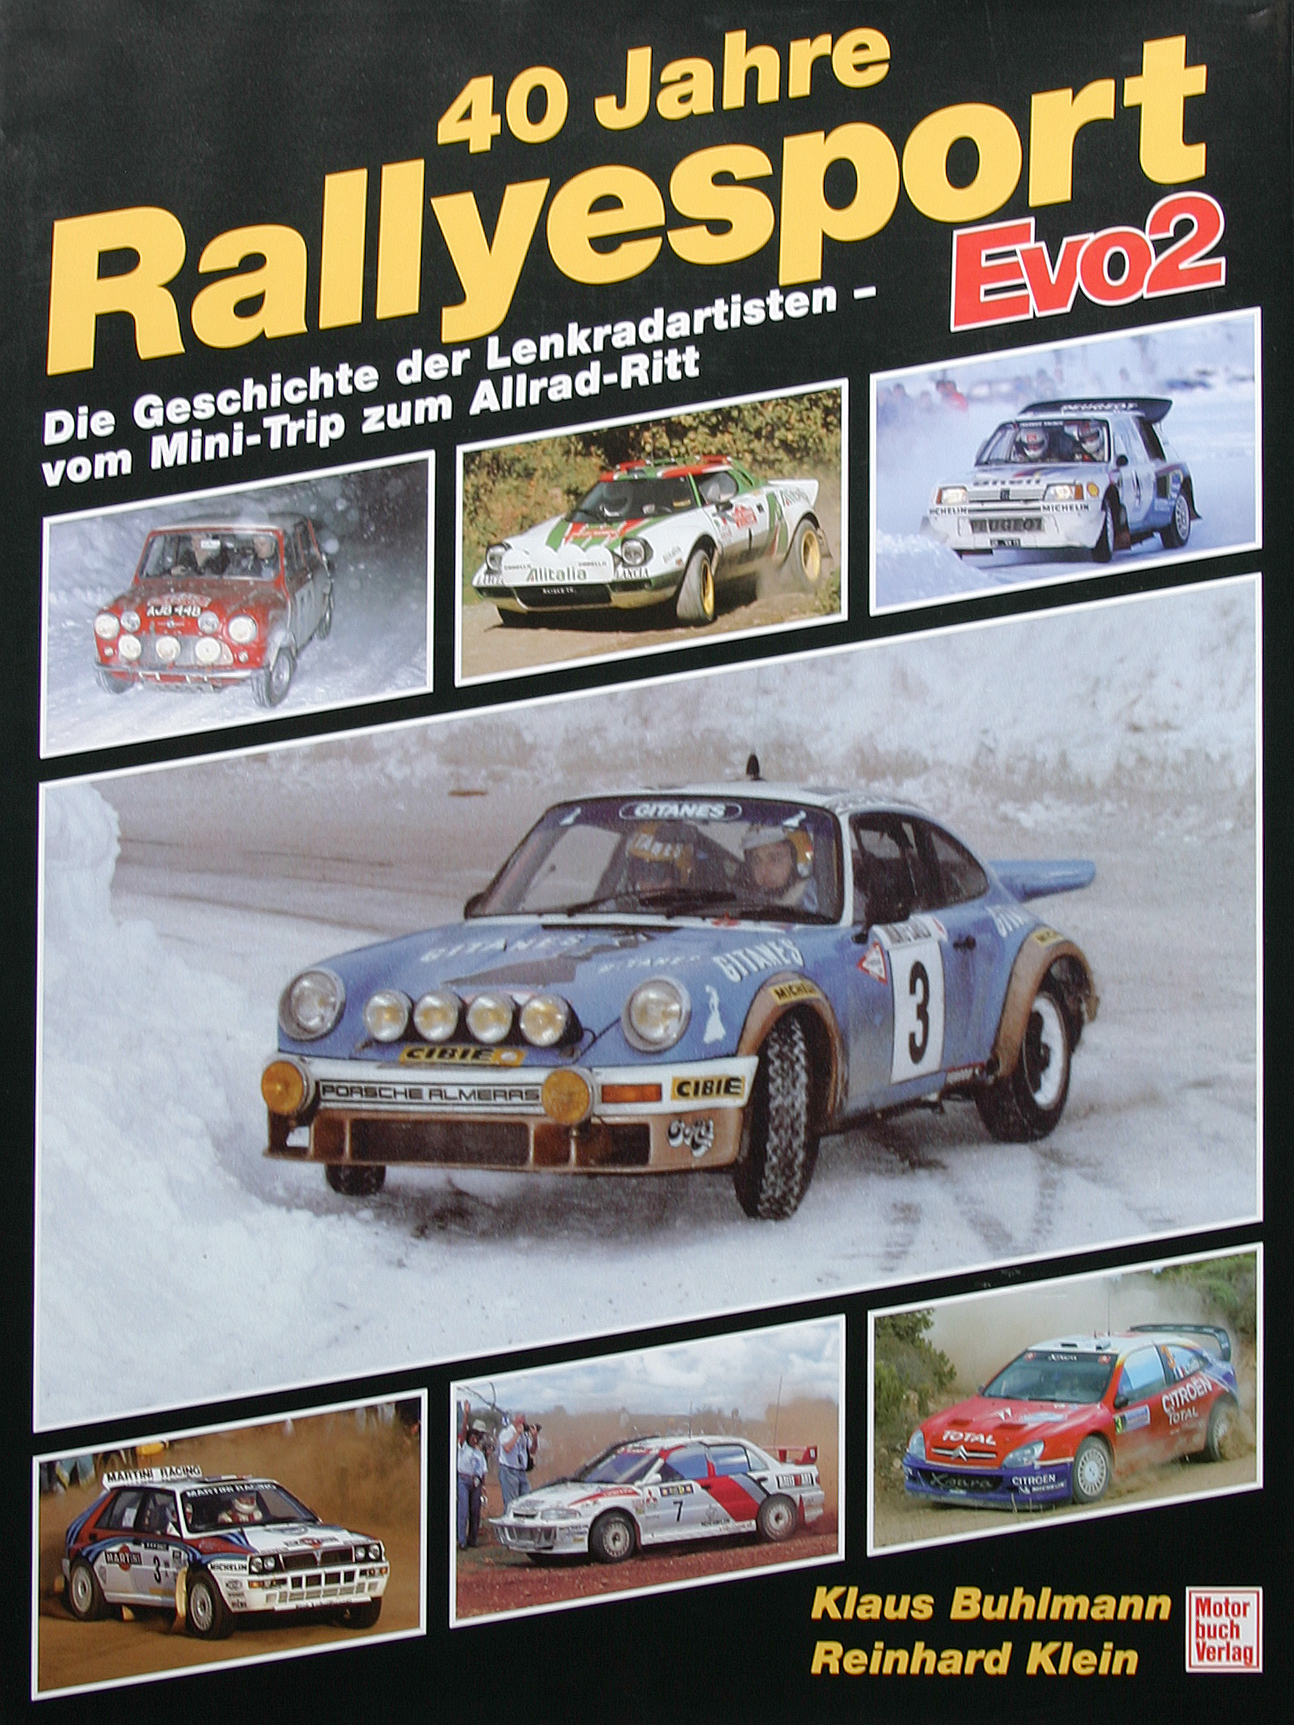 40 Jahre Rallyesport Evo2